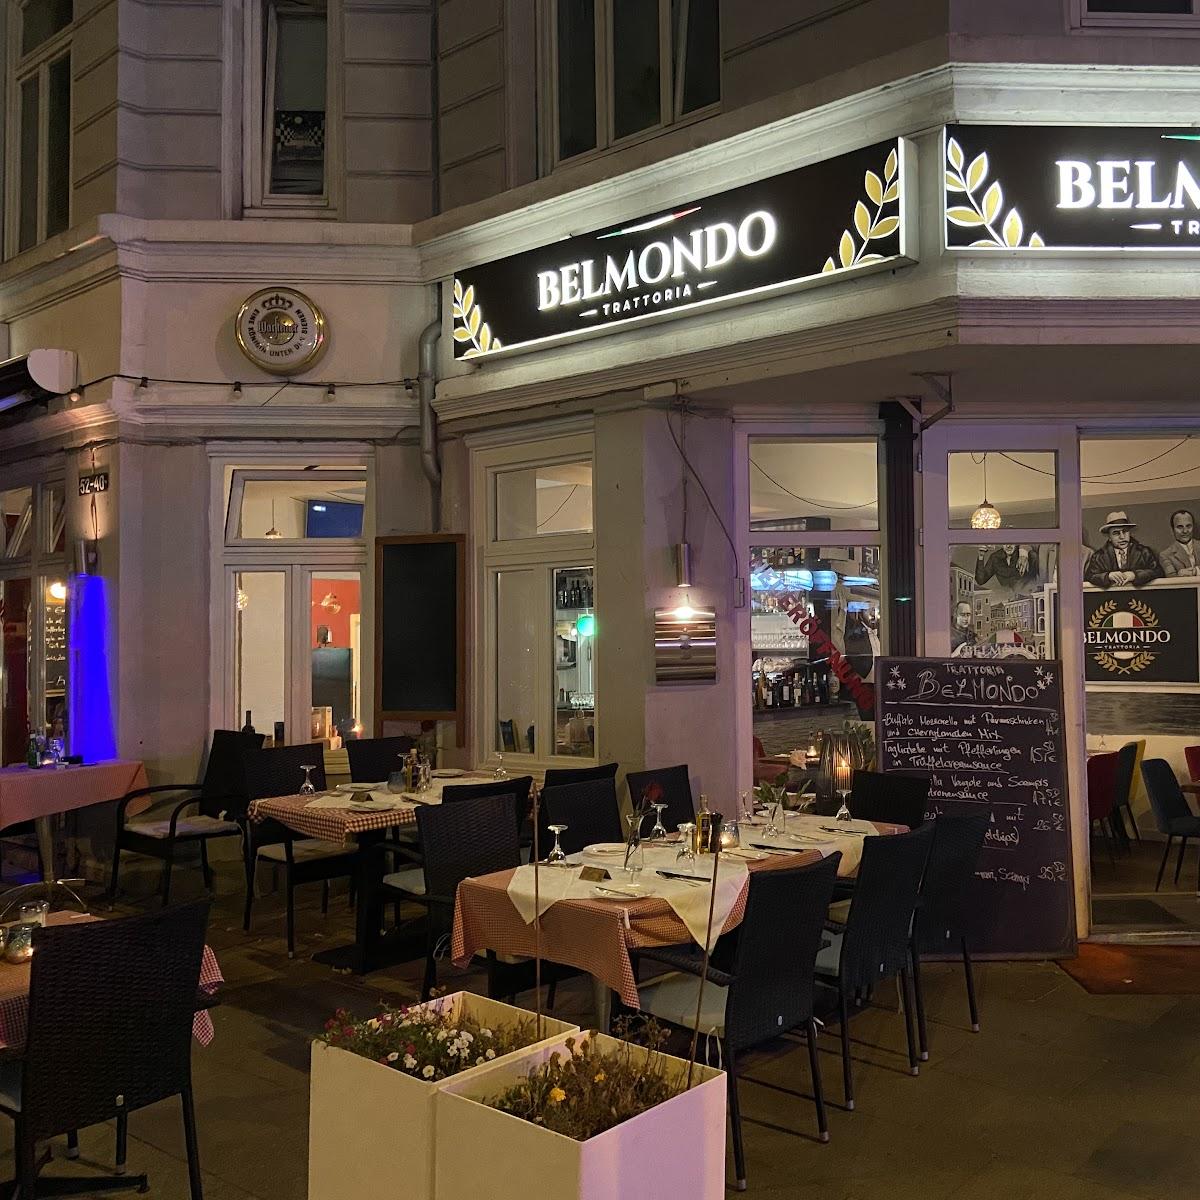 Restaurant "Pizzeria Belmondo" in Hamburg